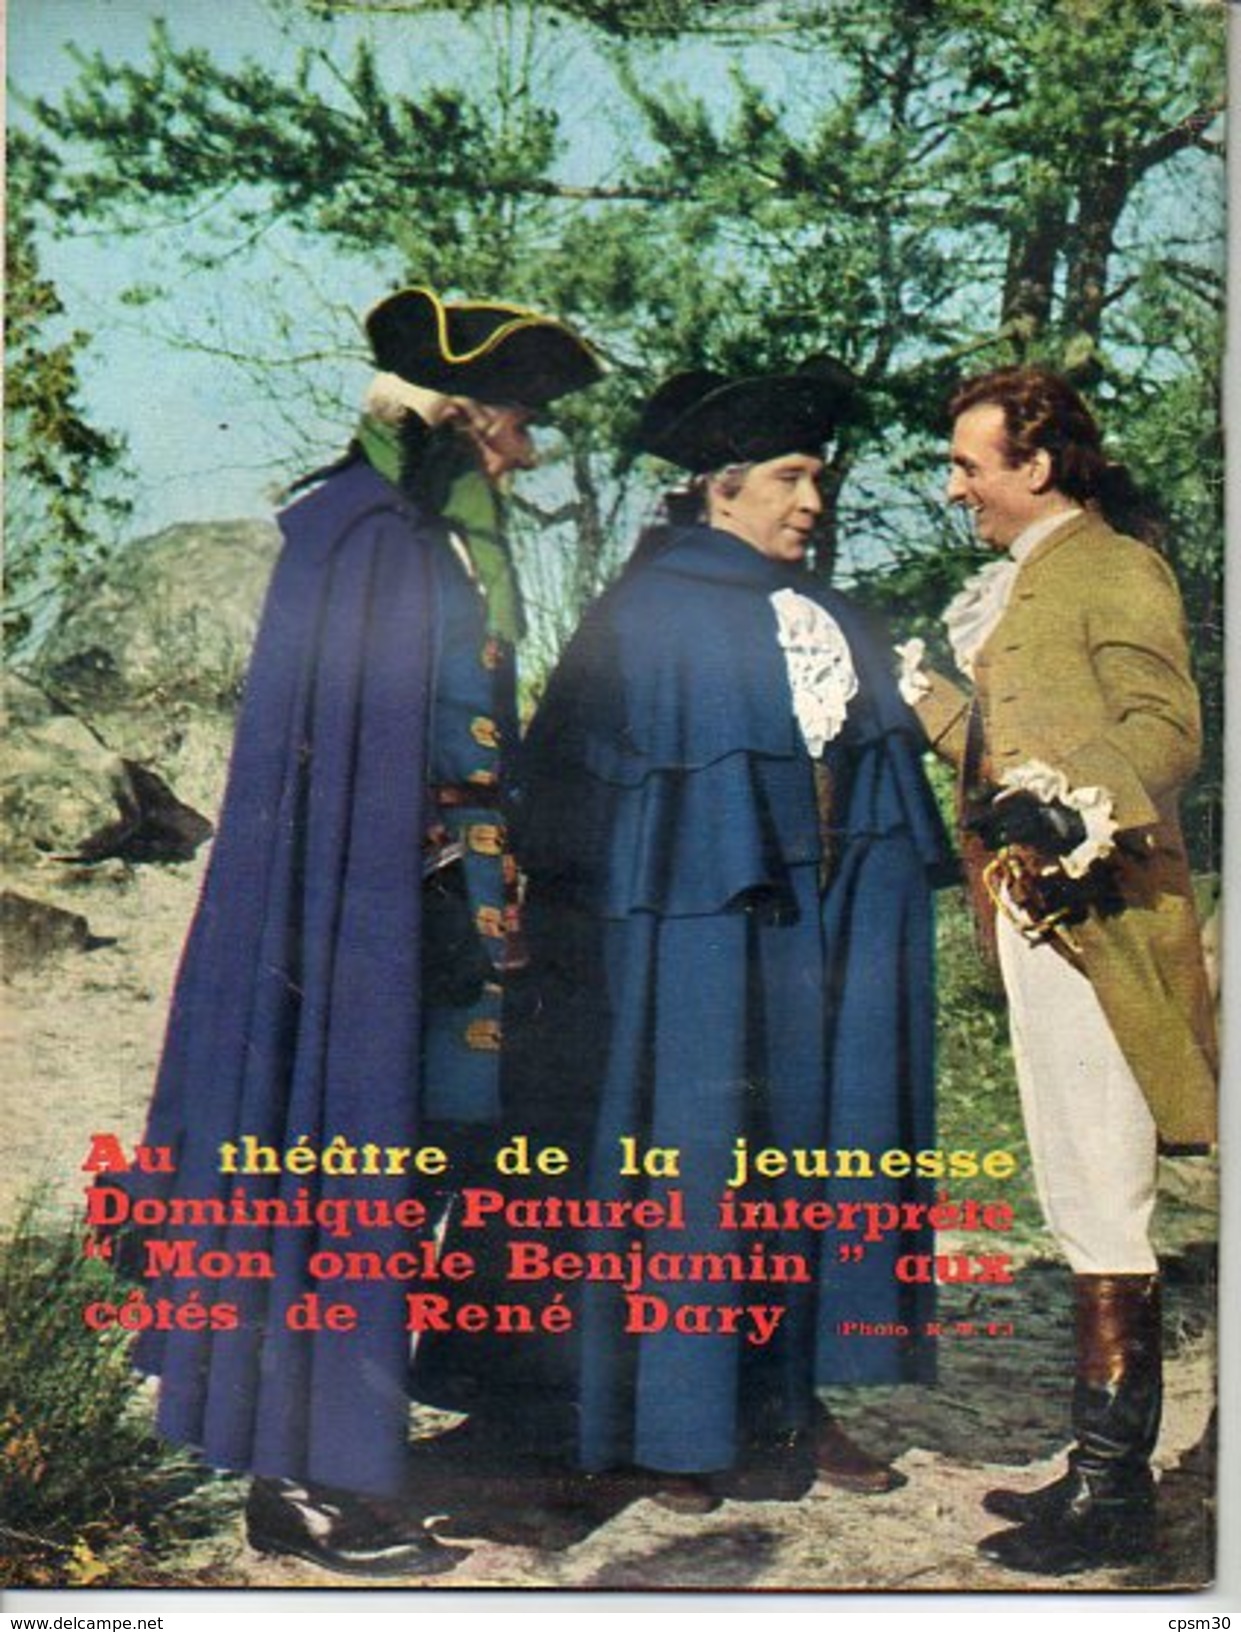 TV France N° 047 - Février 1963 - S Distel 3p - Rugby 3p - J Hallyday - R Dhery - S Loren - P Dedieu - D Paturel - Cinéma/Télévision